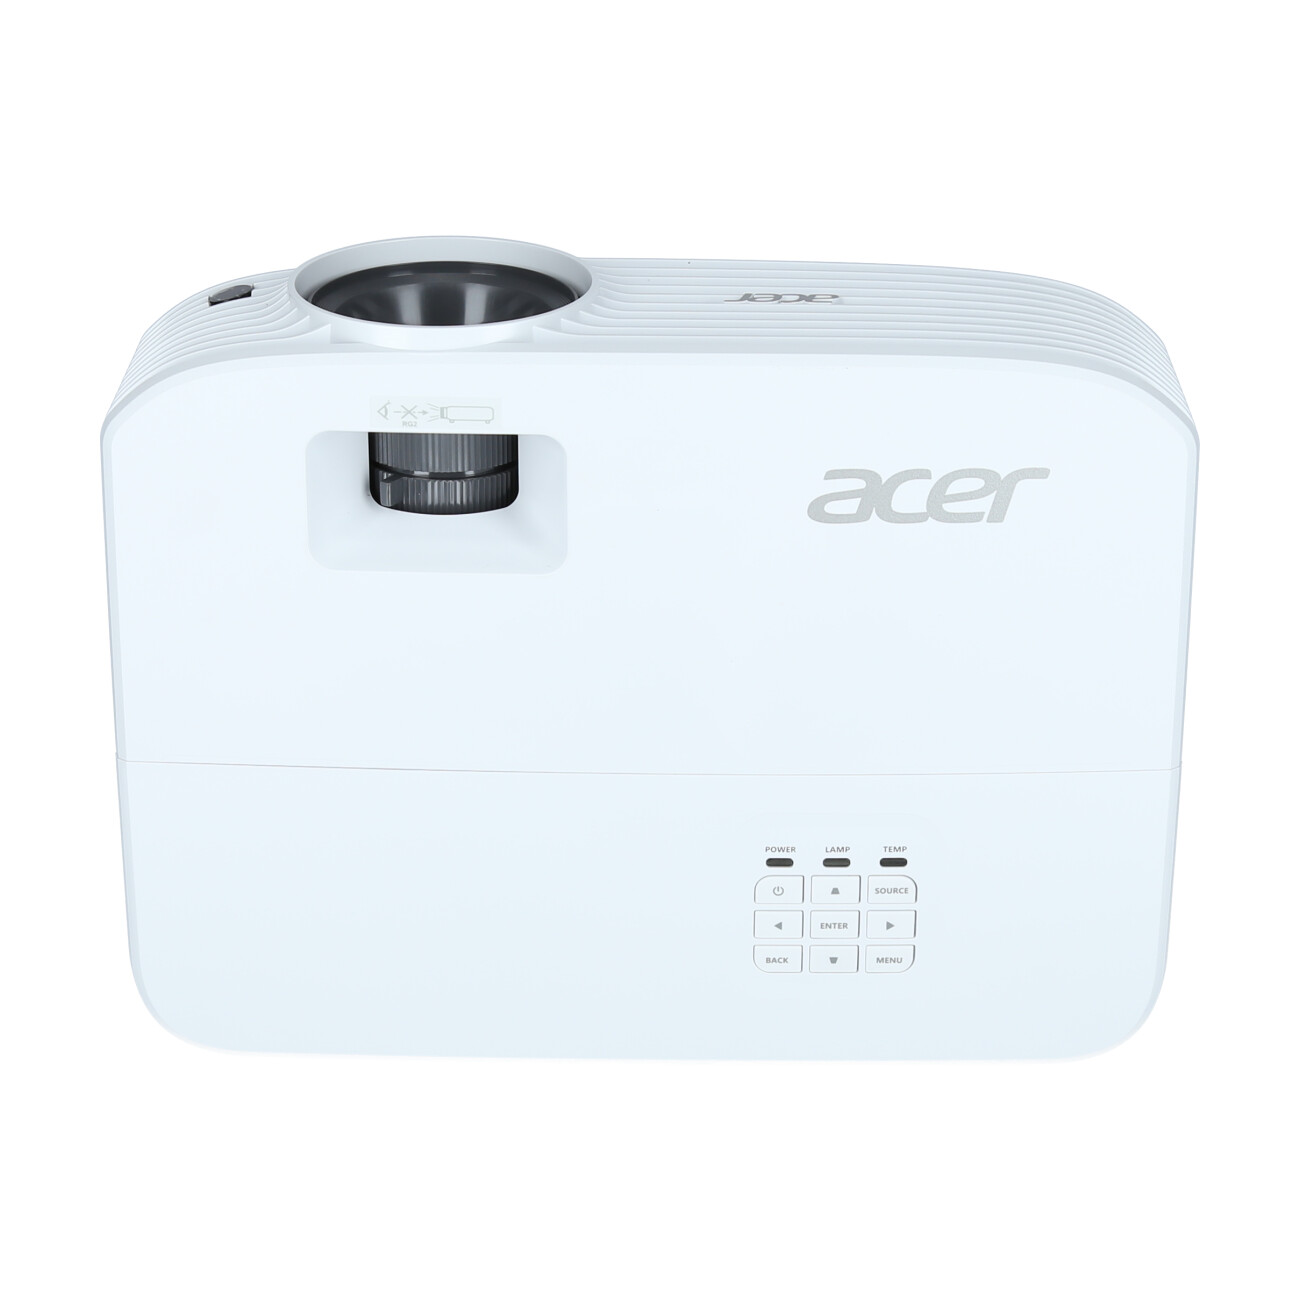 Acer-P1257i-Demo